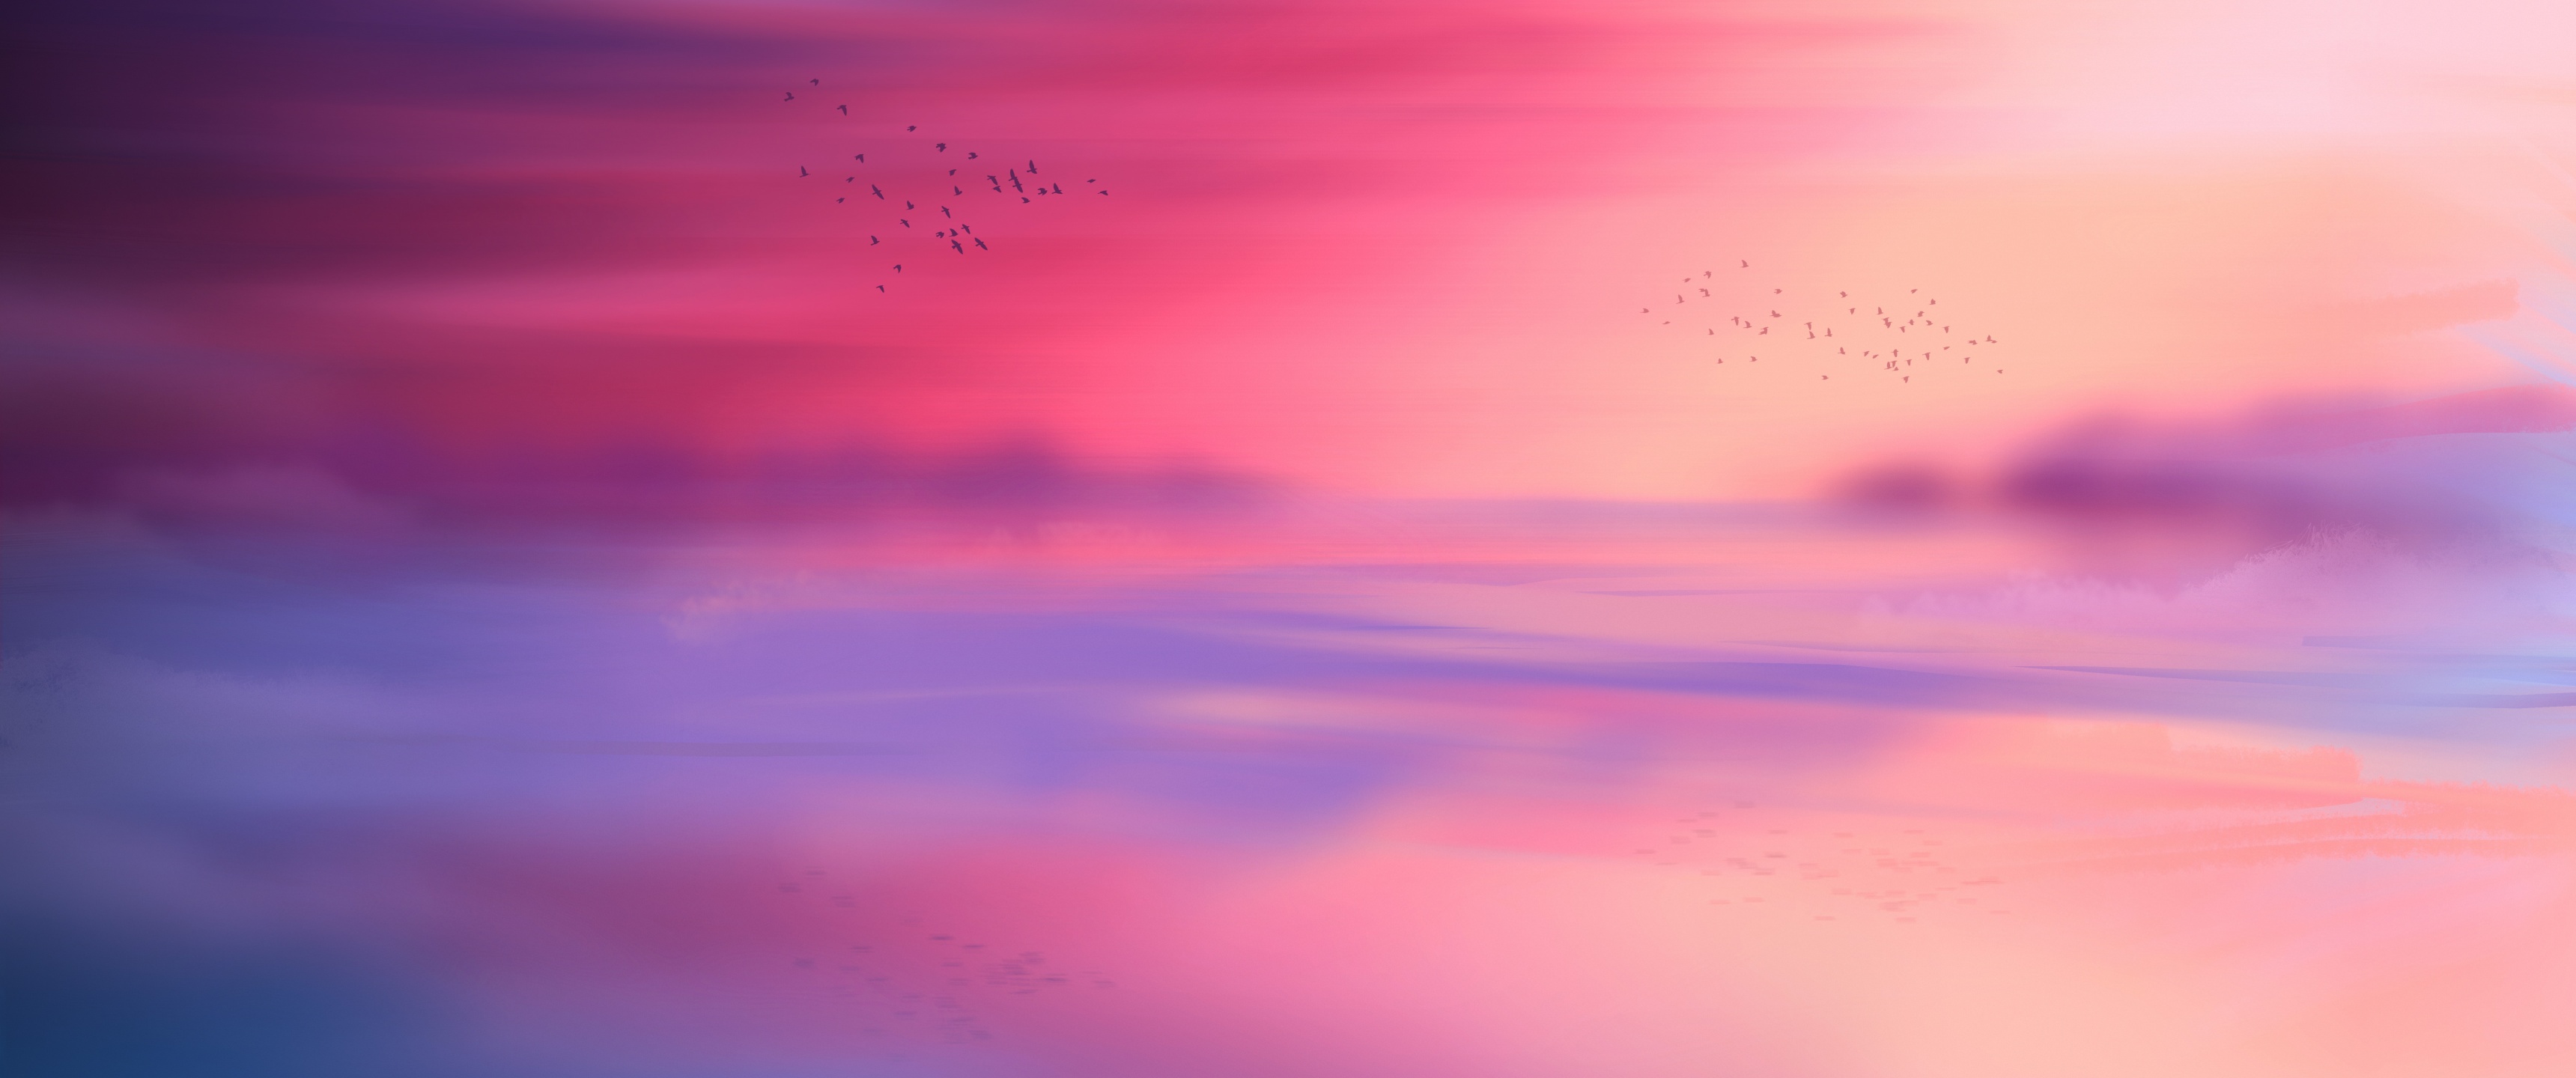 Pink sky Wallpaper 4K, Horizon, Scenic, Flying birds, Seascape, Sunset, Nature